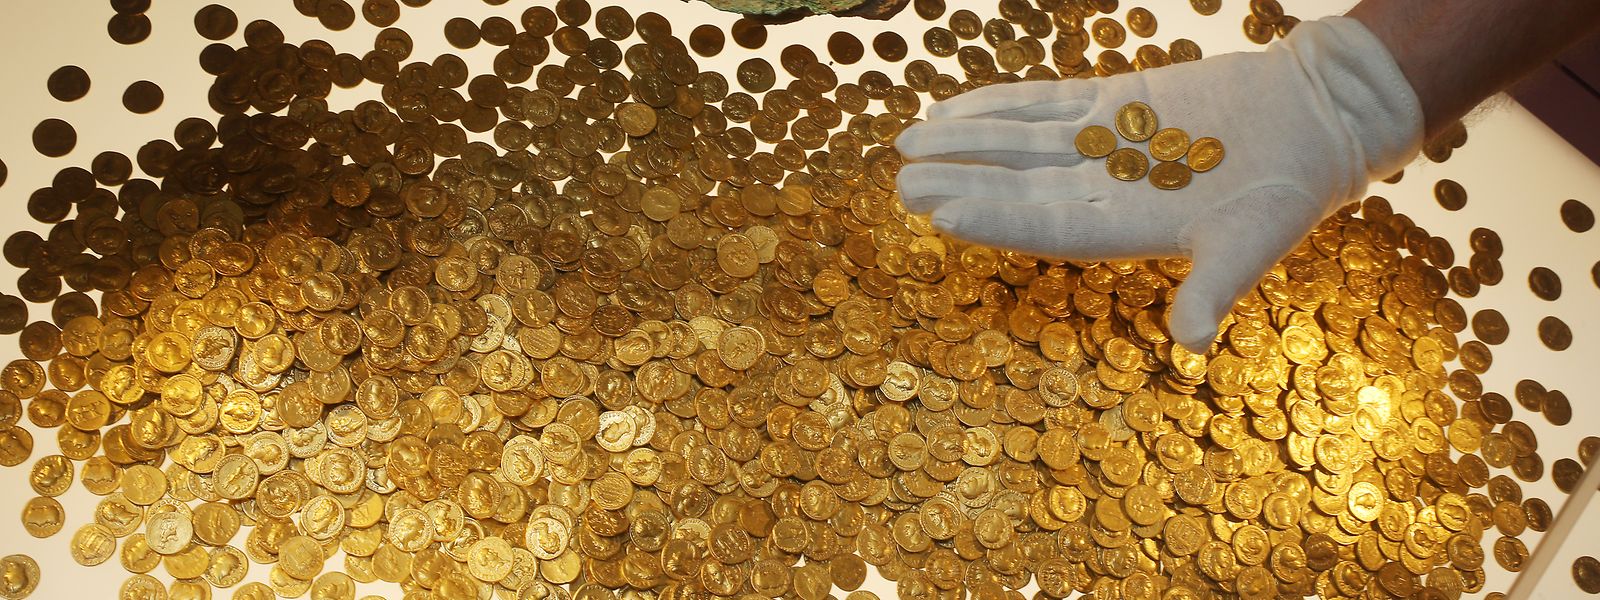 Der "Trierer Goldschatz" wurde 1993 gefunden. Es handelt sich um den weltweit größten Goldschatz der römischen Kaiserzeit: 18,5 Kilo schwer und rund 2600 Münzen stark. 